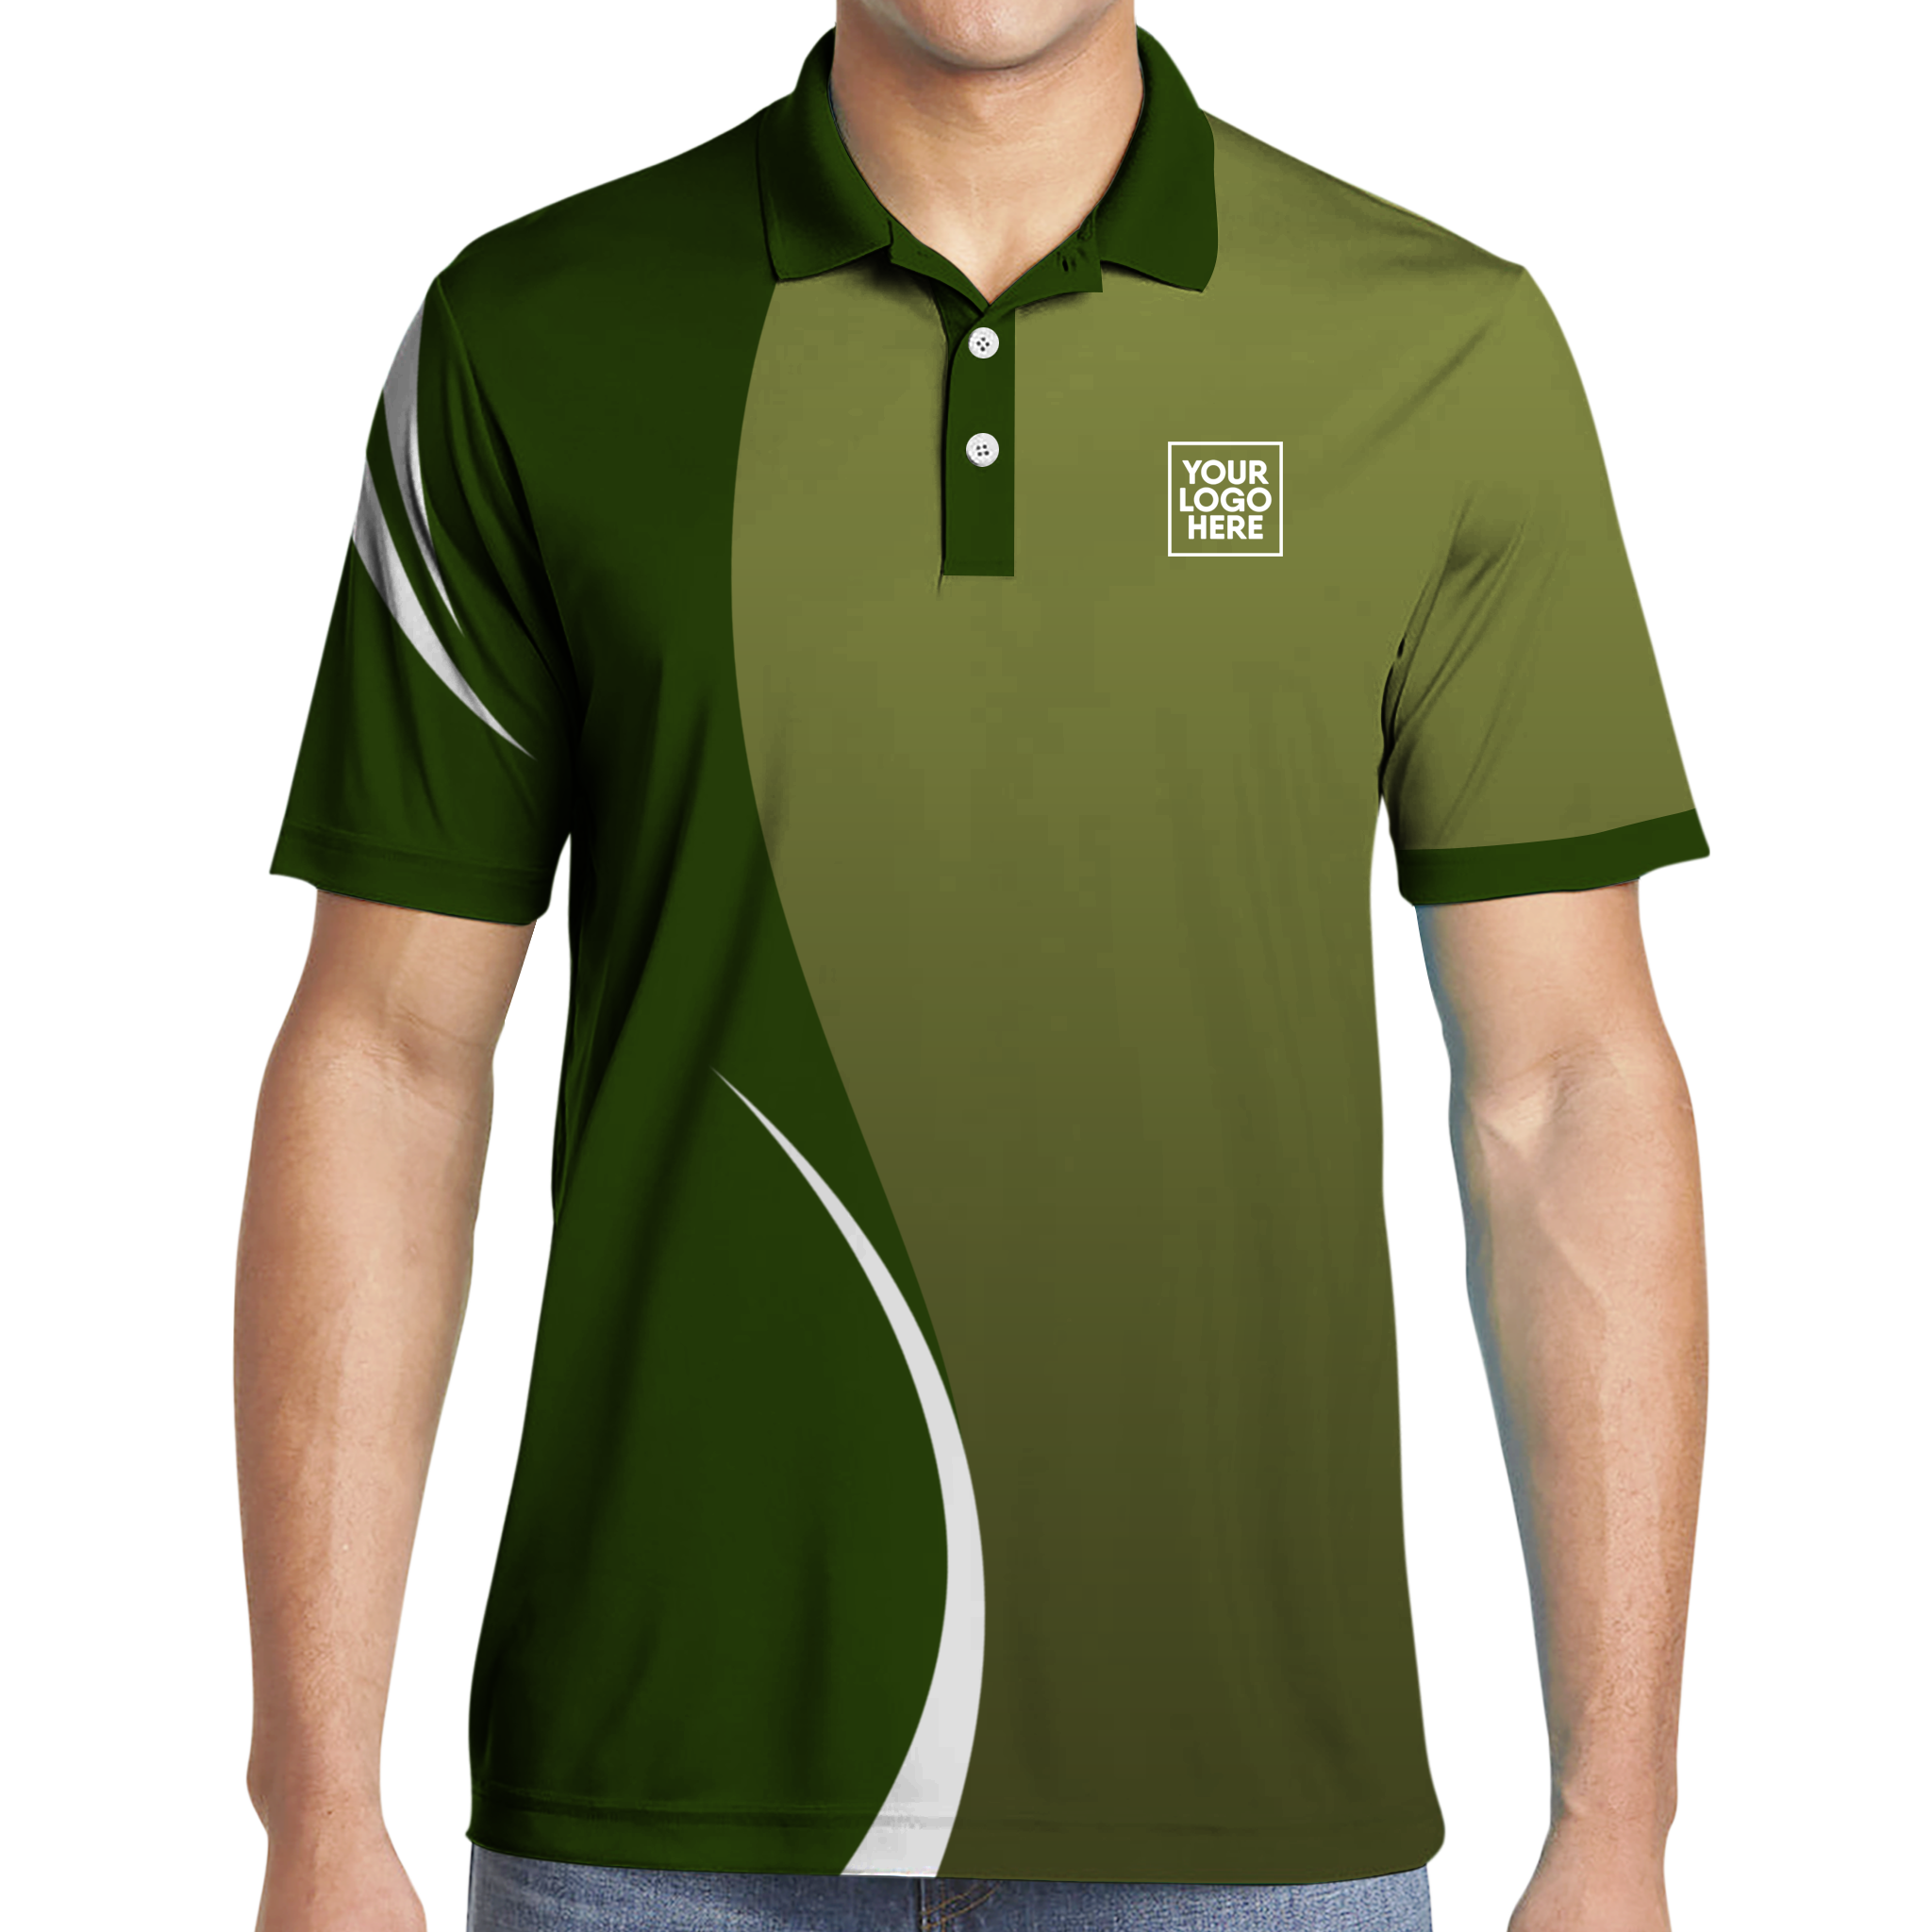 Polo Shirt Design Uniform | stickhealthcare.co.uk